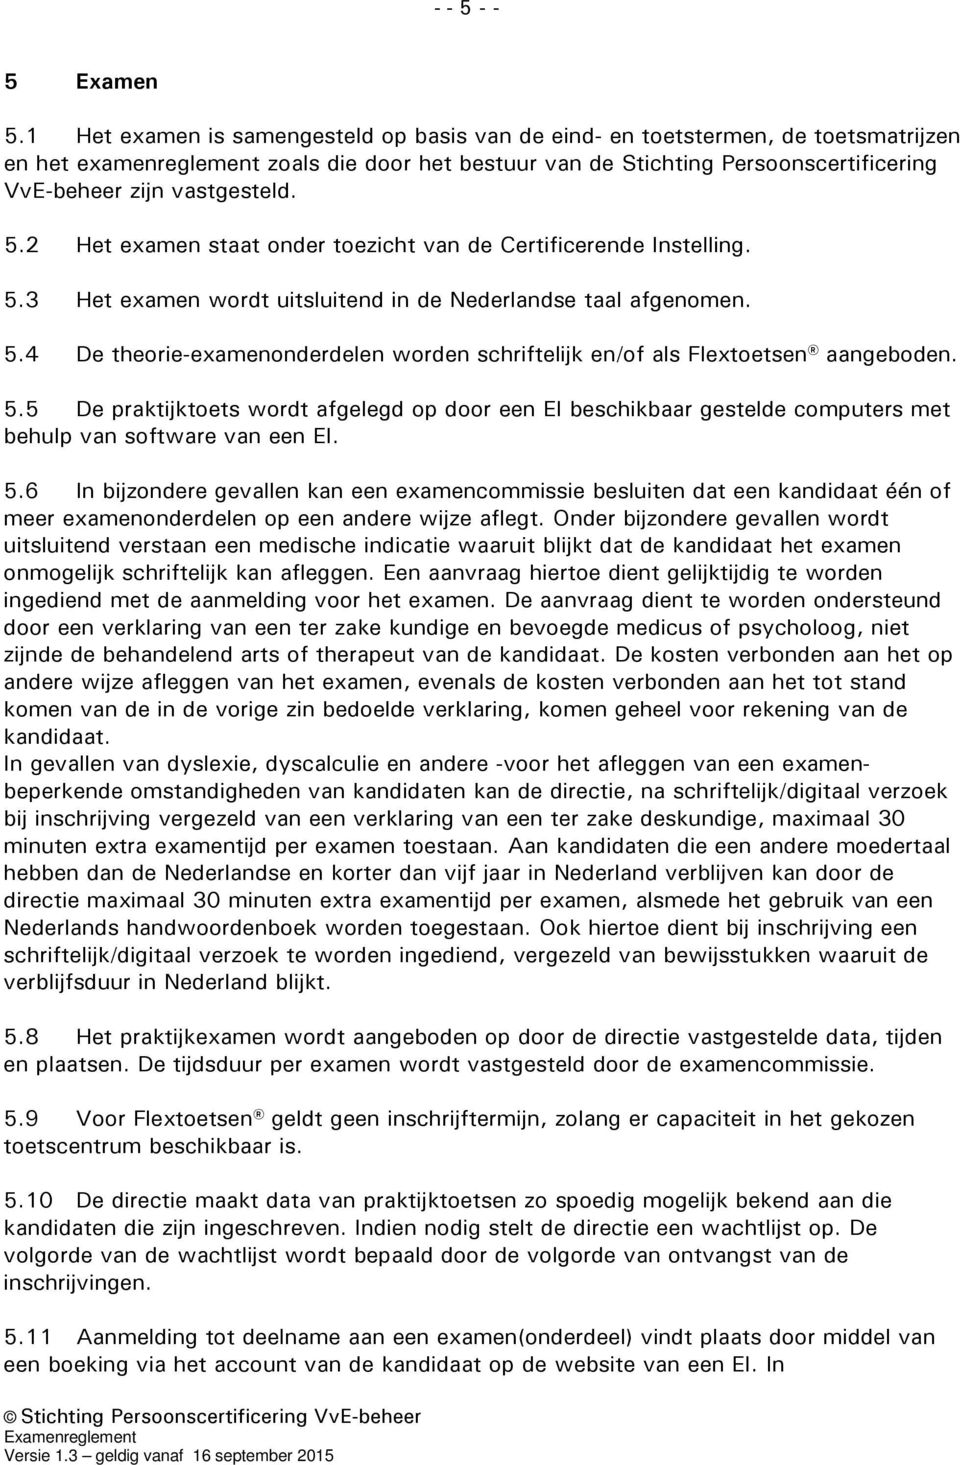 vastgesteld. 5.2 Het examen staat onder toezicht van de Certificerende Instelling. 5.3 Het examen wordt uitsluitend in de Nederlandse taal afgenomen. 5.4 De theorie-examenonderdelen worden schriftelijk en/of als Flextoetsen aangeboden.